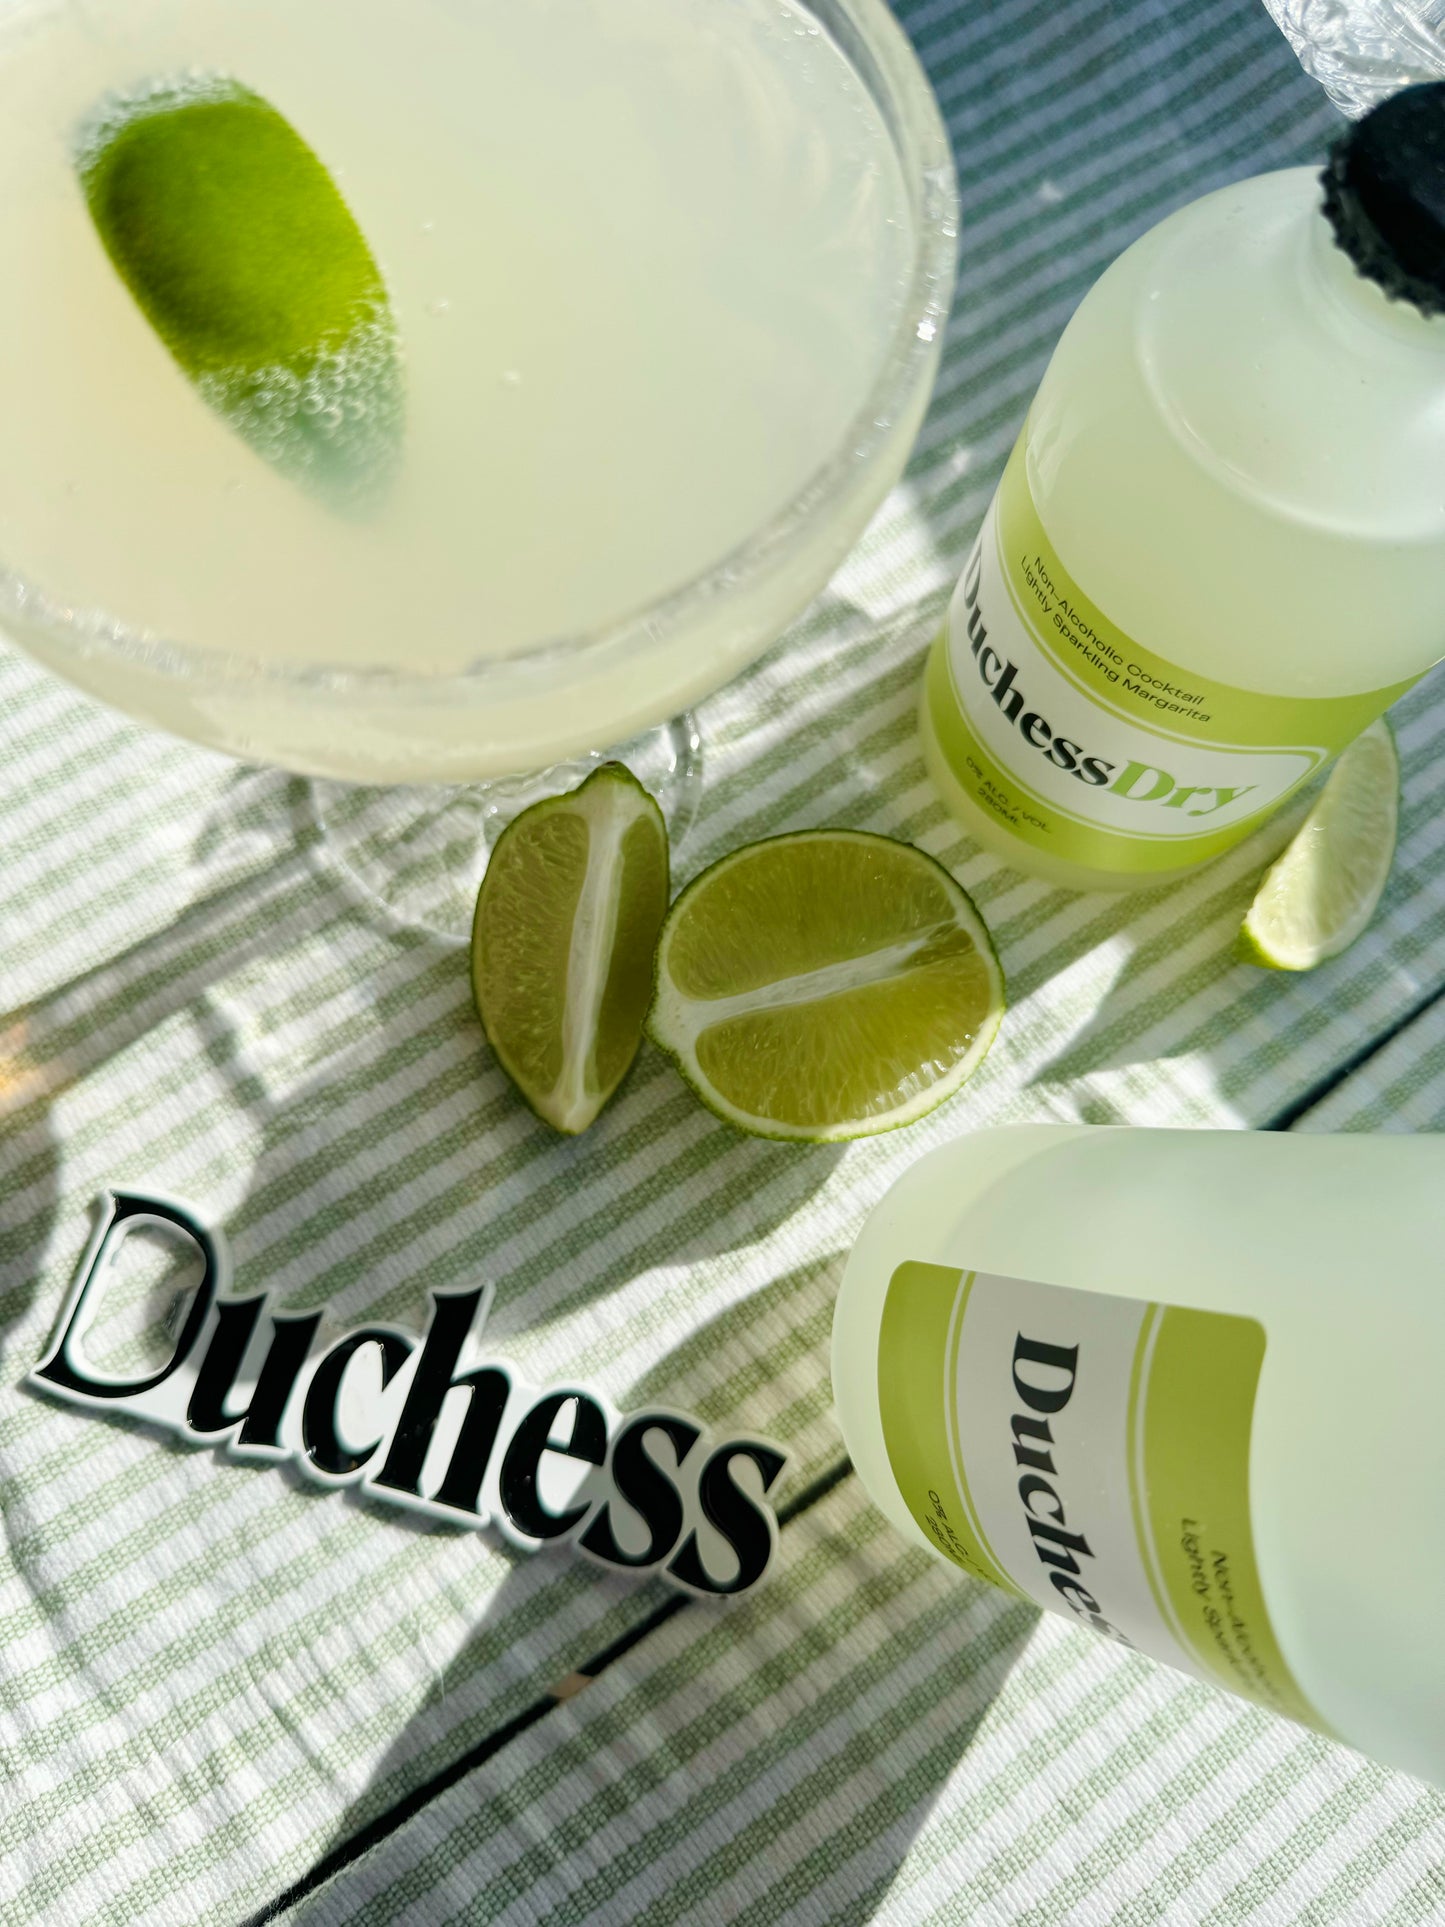 DuchessDry Non-Alcoholic Margarita